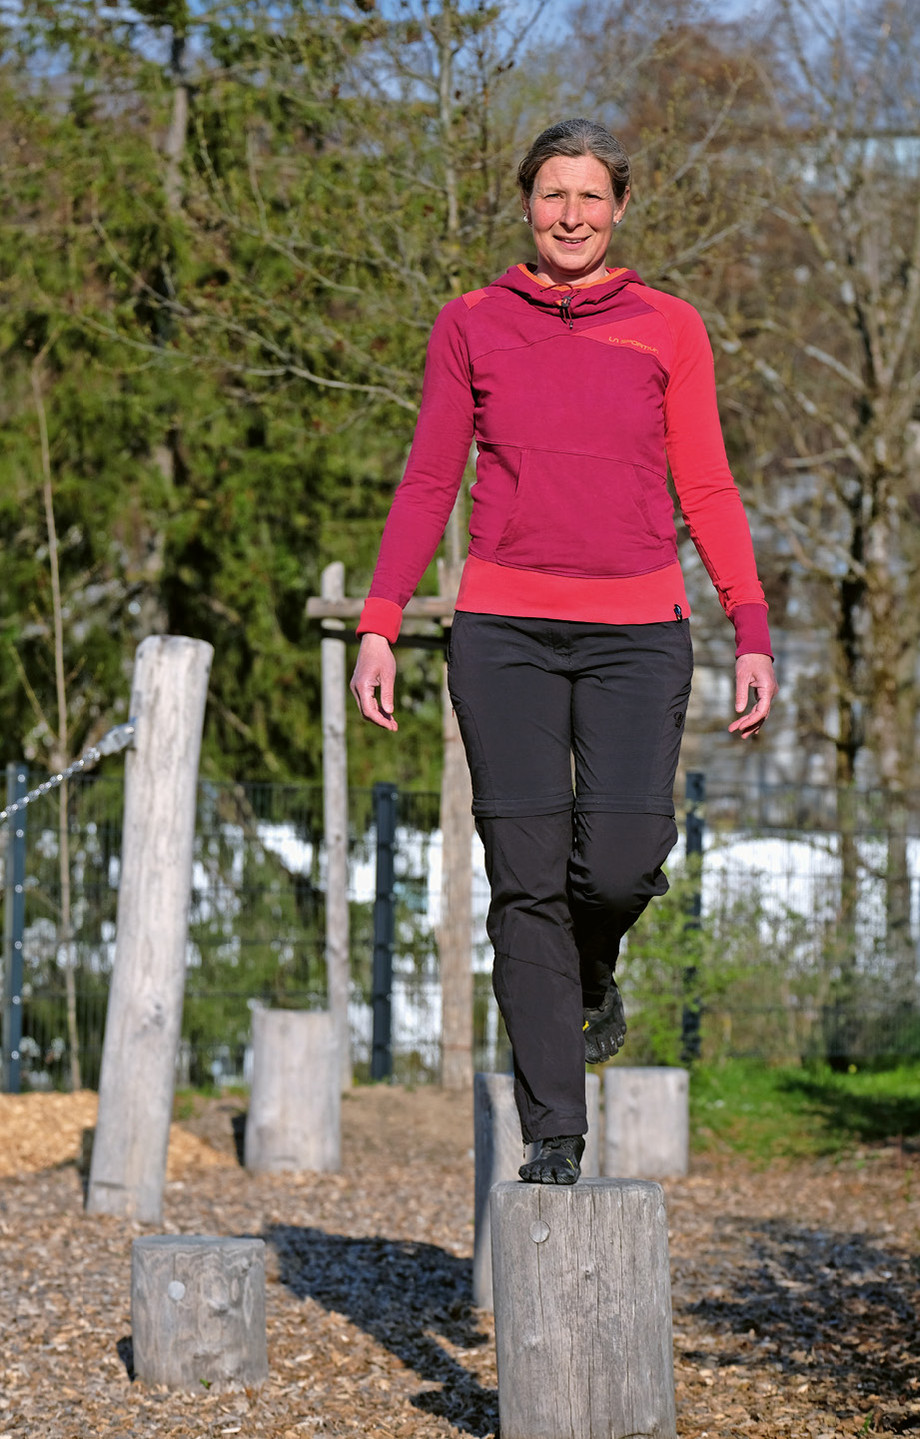 Claudia Butry im Einbeinstand. Gleichgewichtsübungen stimulieren das Gehirn und verbessern das Reitgefühl. (Foto: Jens Kerick)